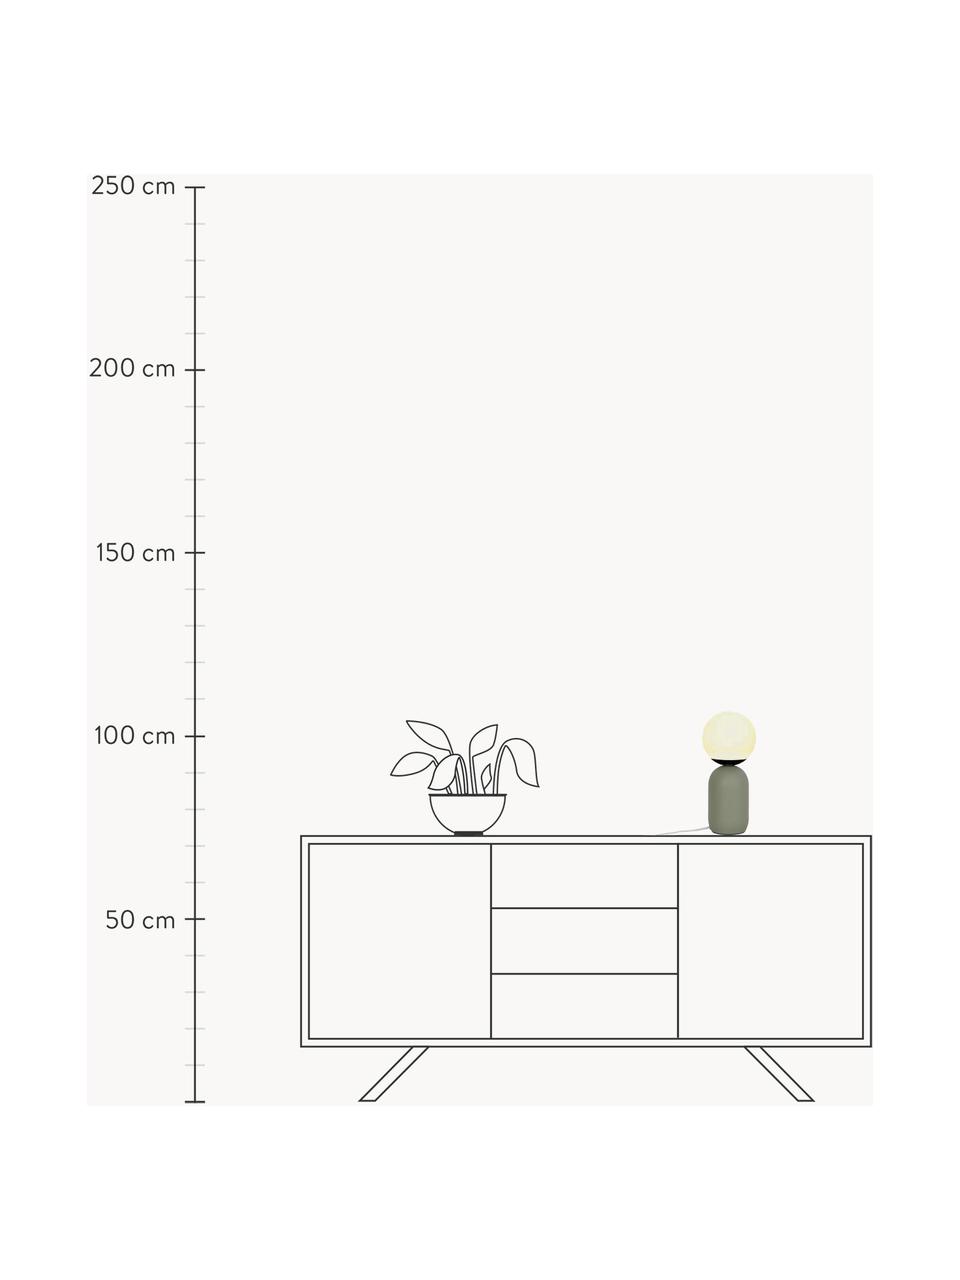 Kleine tafellamp Notti, Lampvoet: gecoat metaal, Lampenkap: mondgeblazen glas, Wit, olijfgroen, Ø 15 x H 35 cm